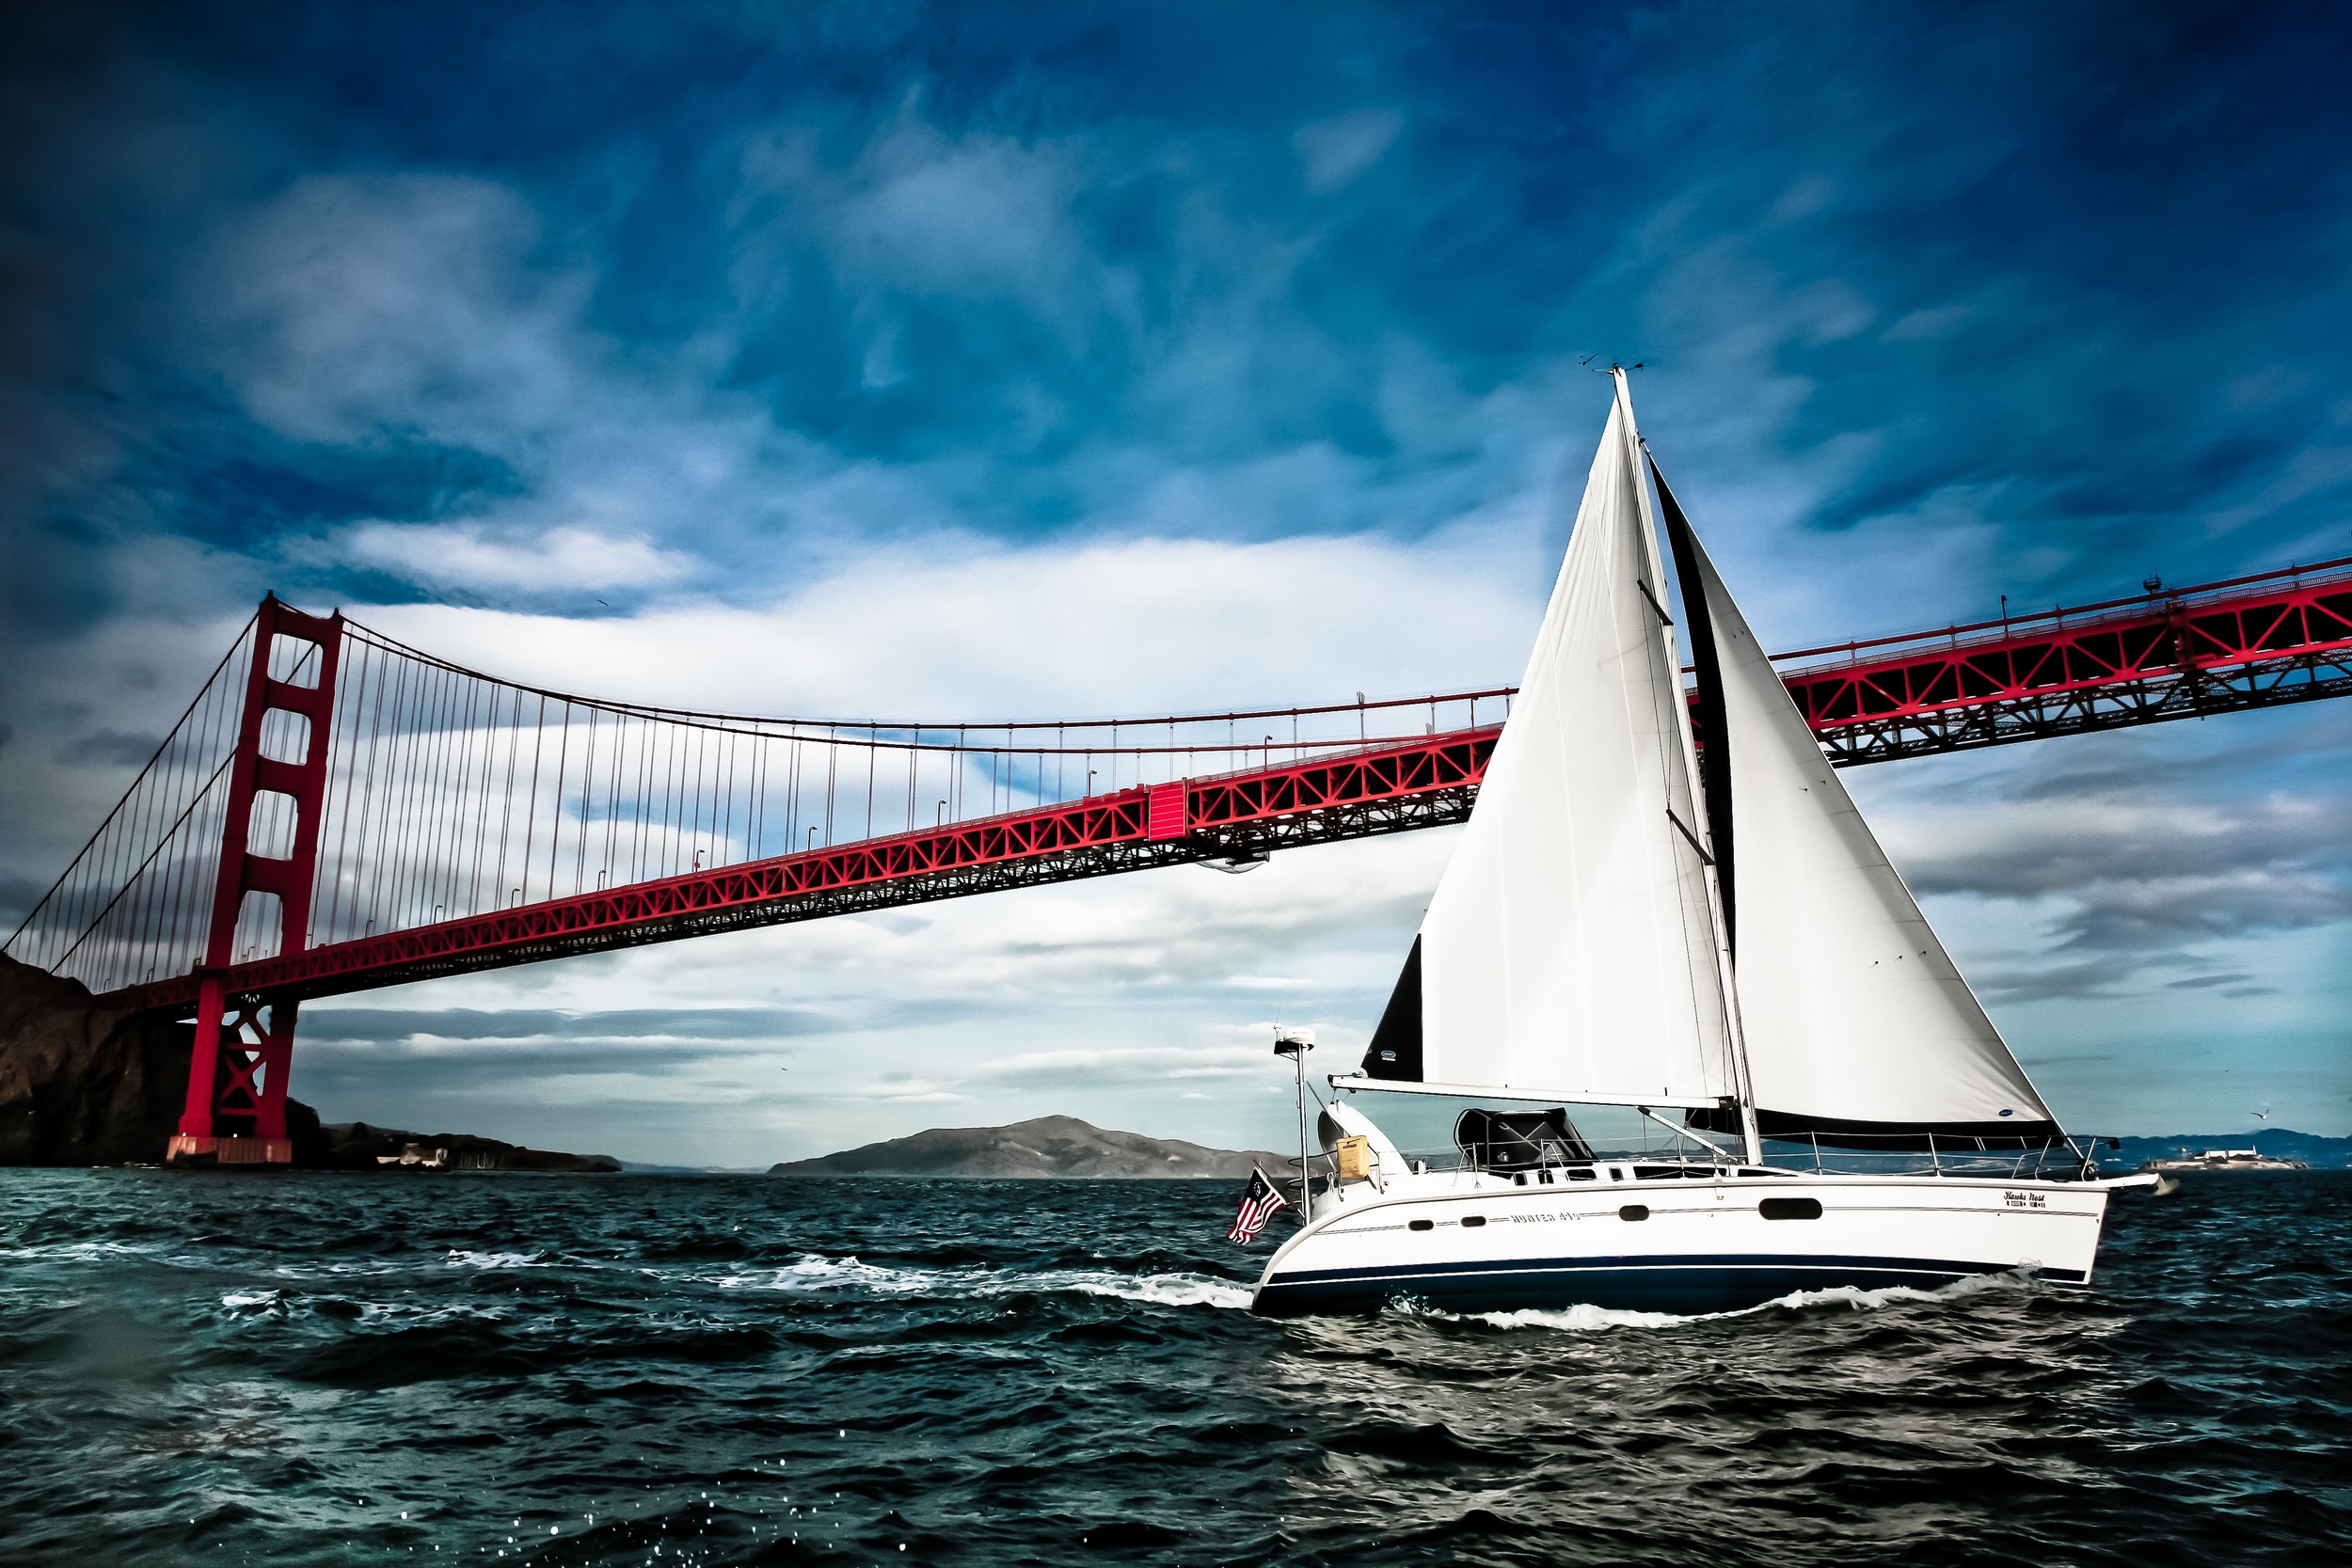  Sailing Charters on San Francisco Bay 